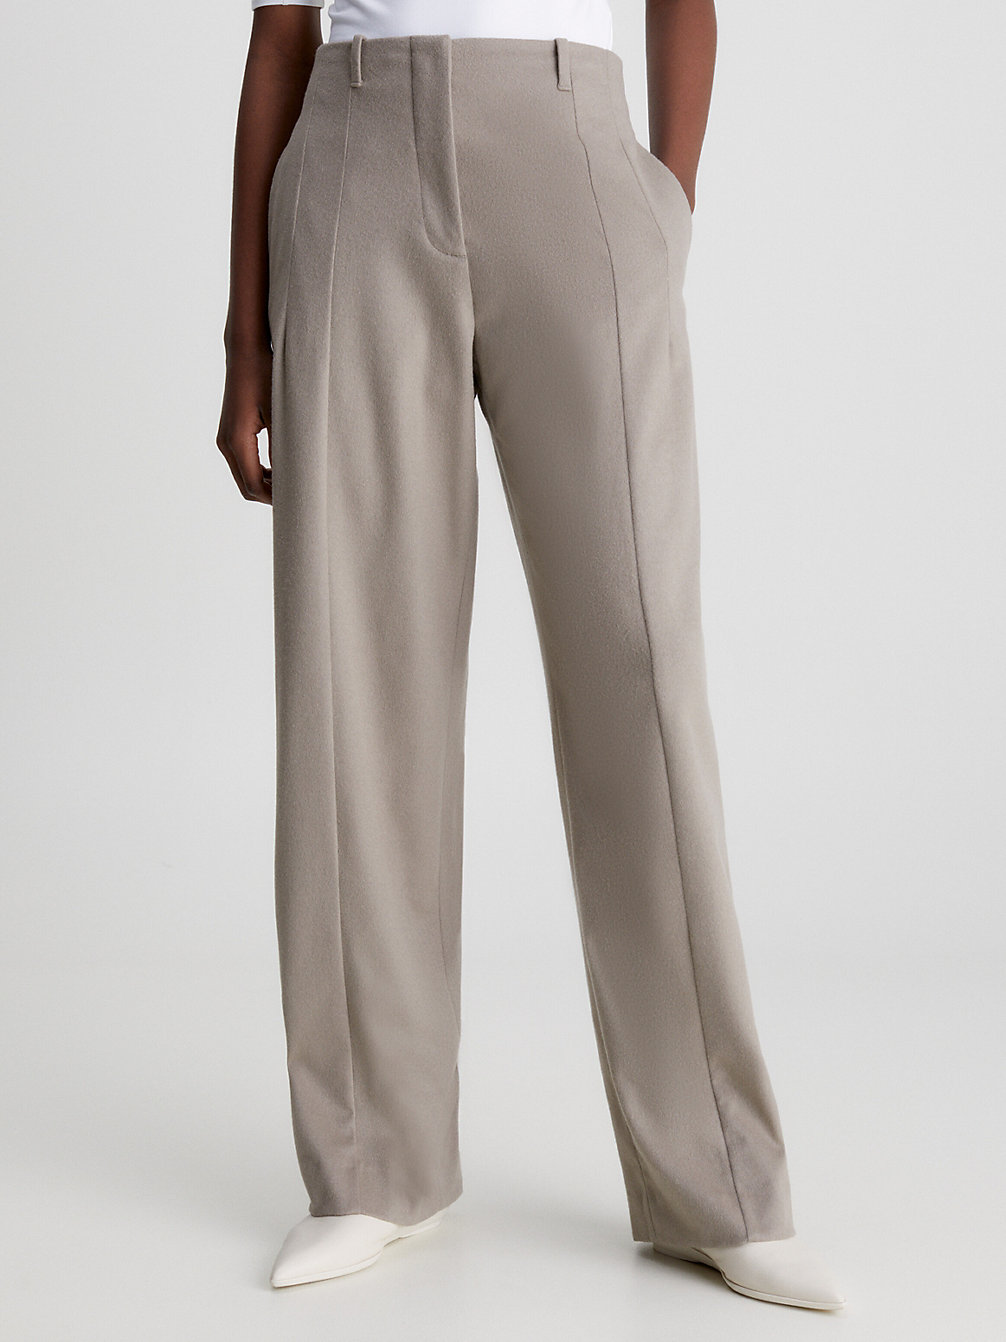 CINDER > Miękkie Dopasowane Spodnie Wełniane > undefined Kobiety - Calvin Klein